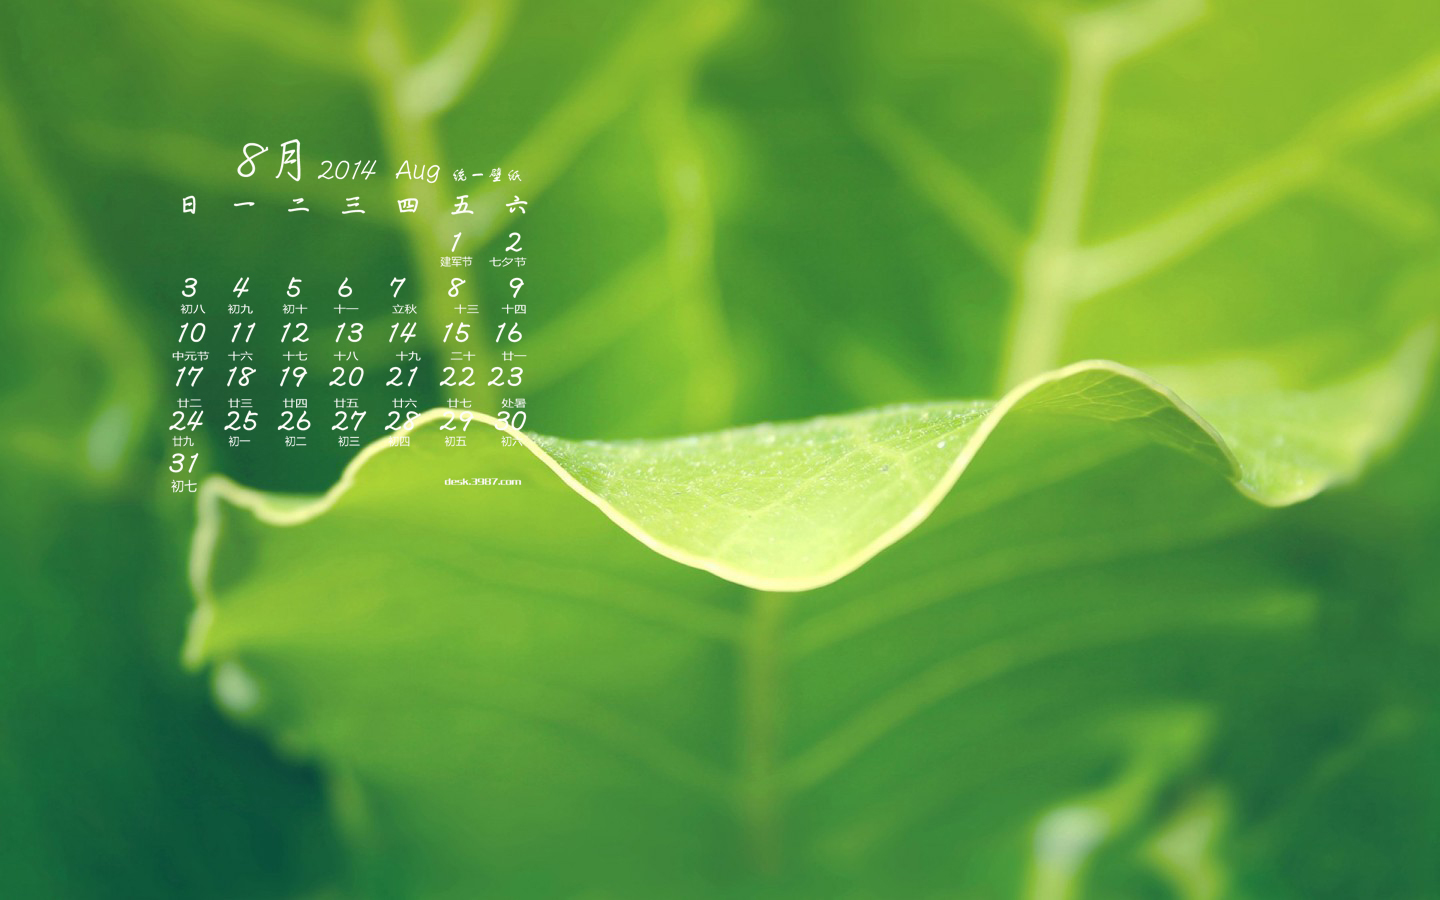  绿叶八月日历电脑壁纸 